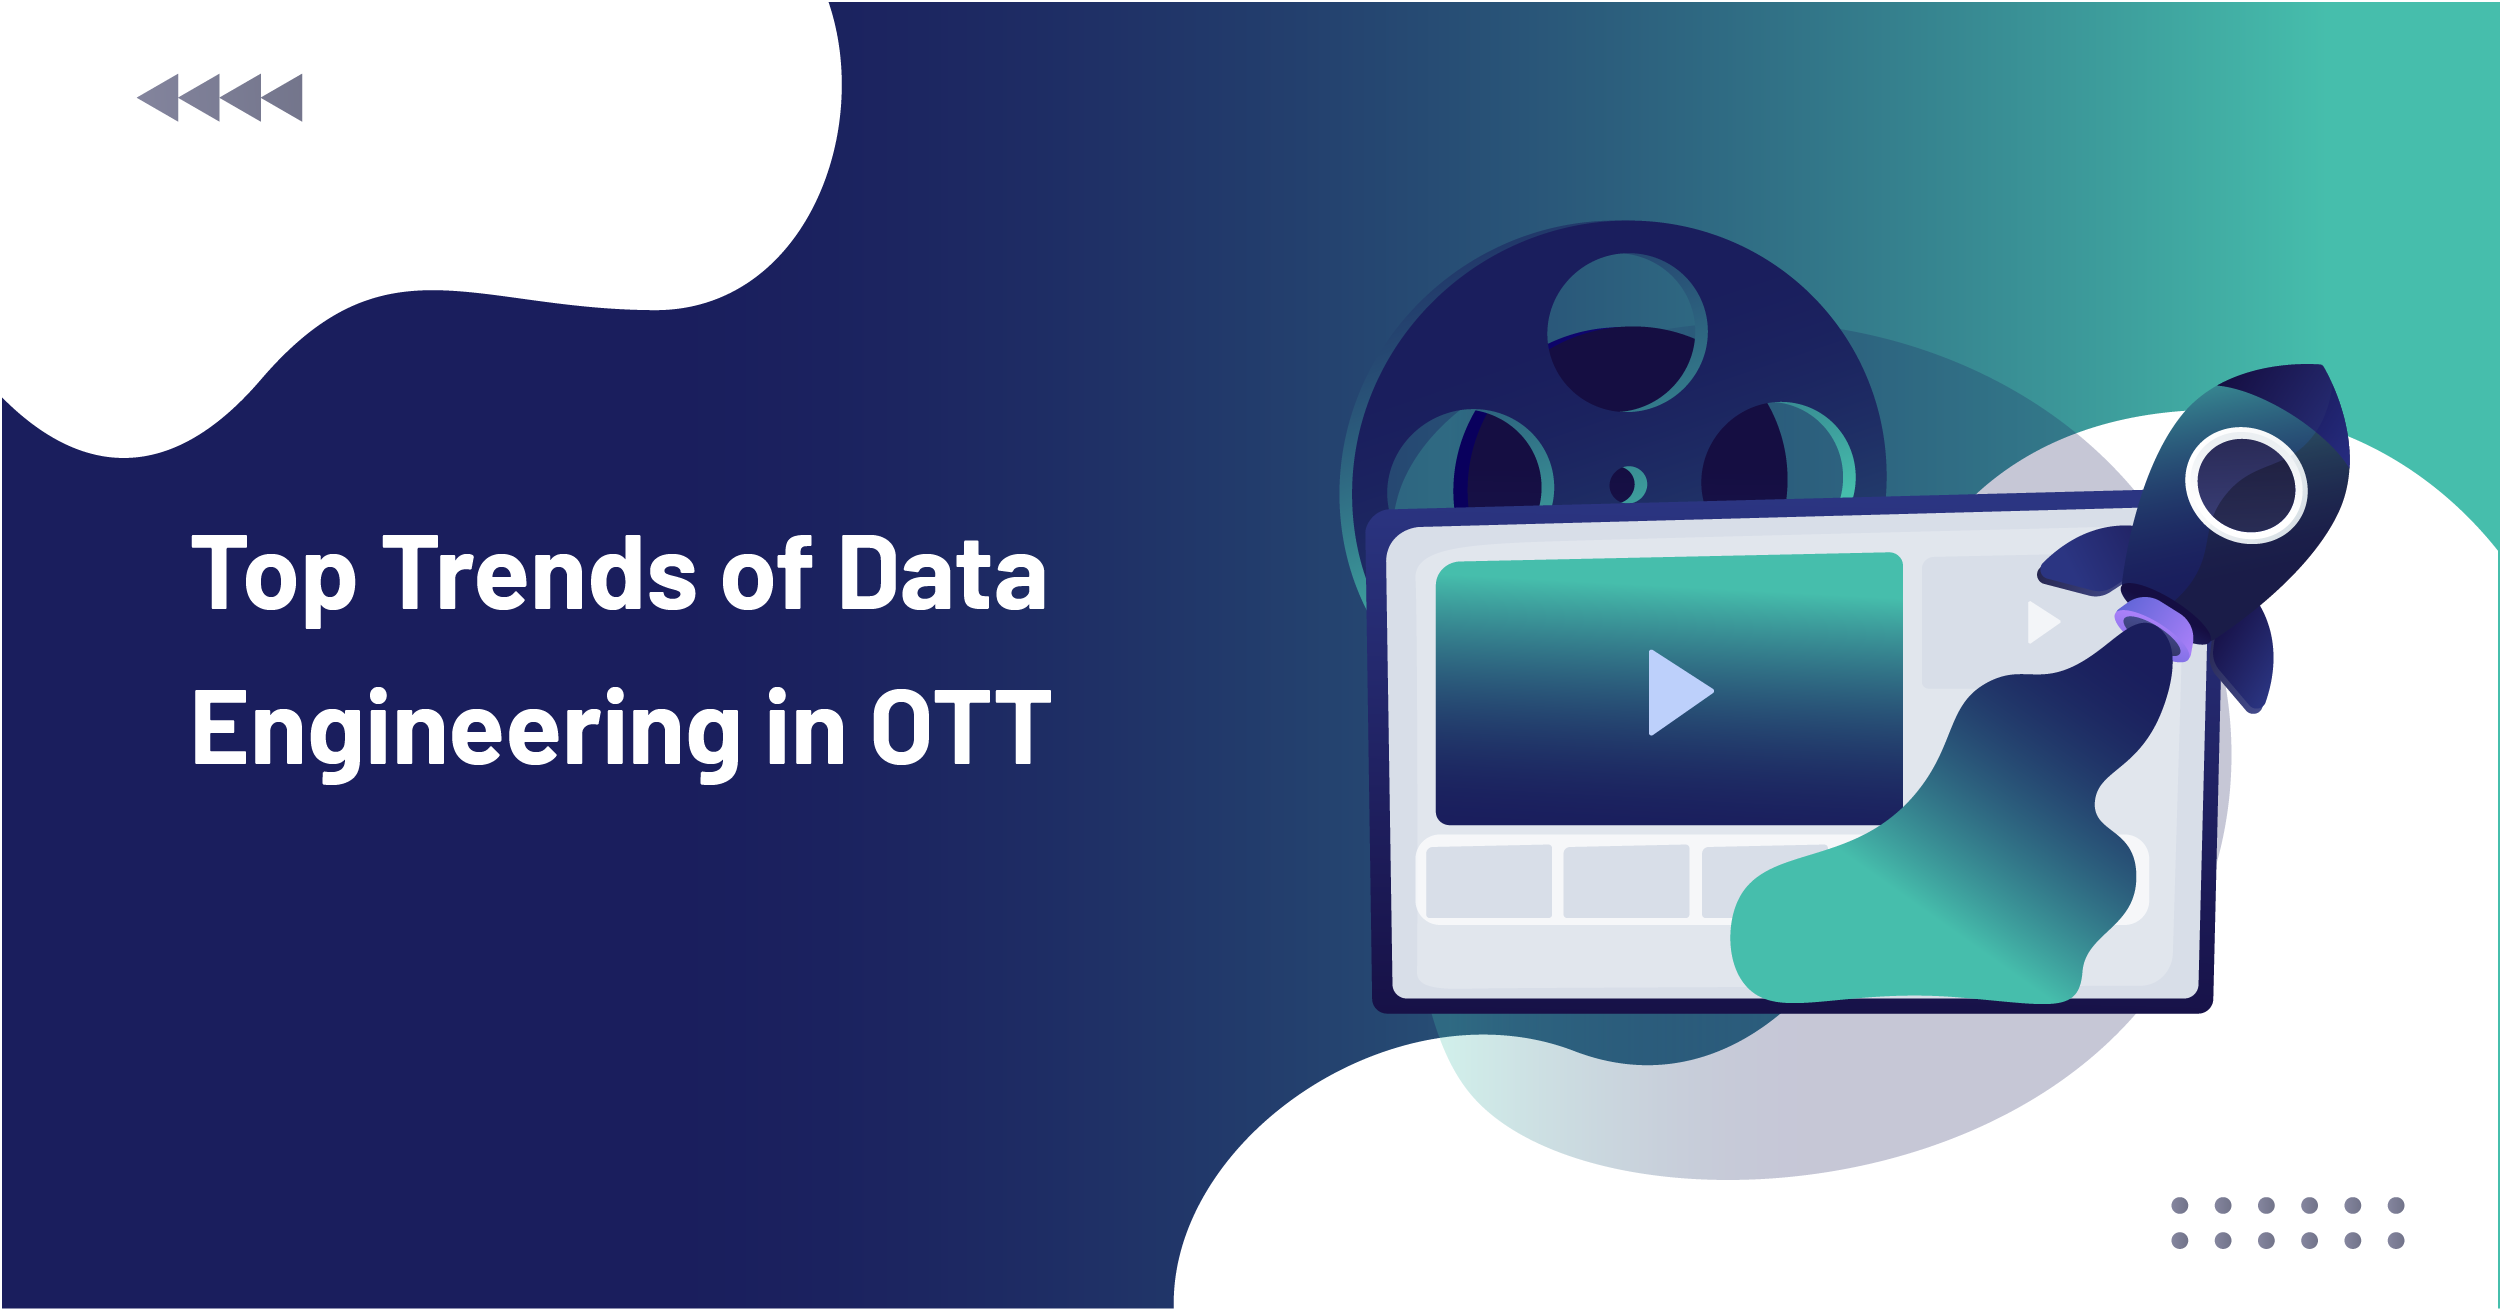 Top Trends of Data Engineering in OTT